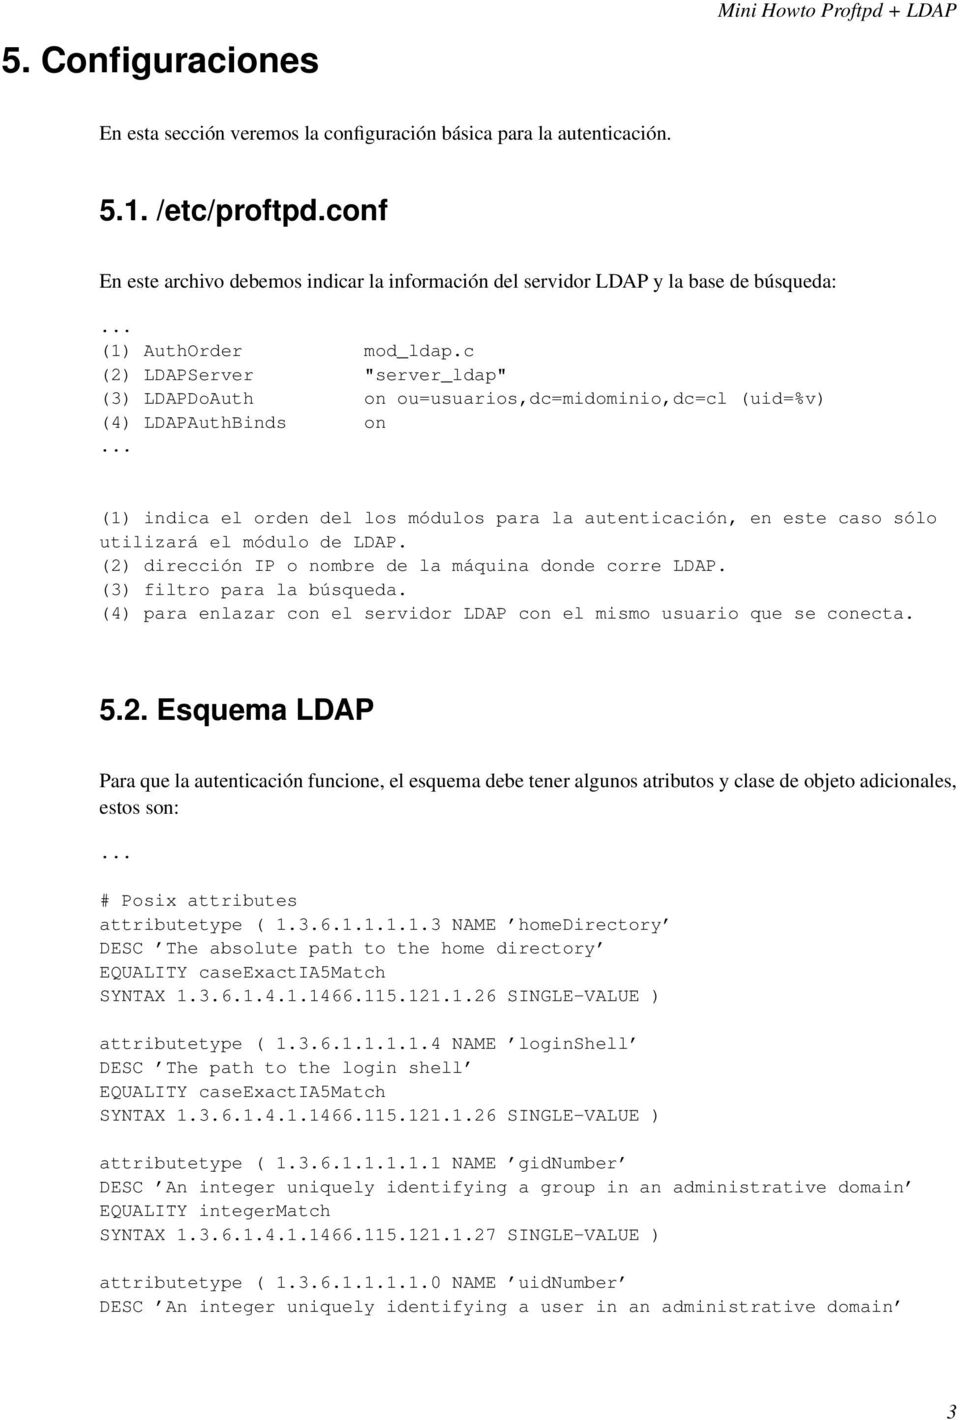 c (2) LDAPServer "server_ldap" (3) LDAPDoAuth on ou=usuarios,dc=midominio,dc=cl (uid=%v) (4) LDAPAuthBinds on (1) indica el orden del los módulos para la autenticación, en este caso sólo utilizará el